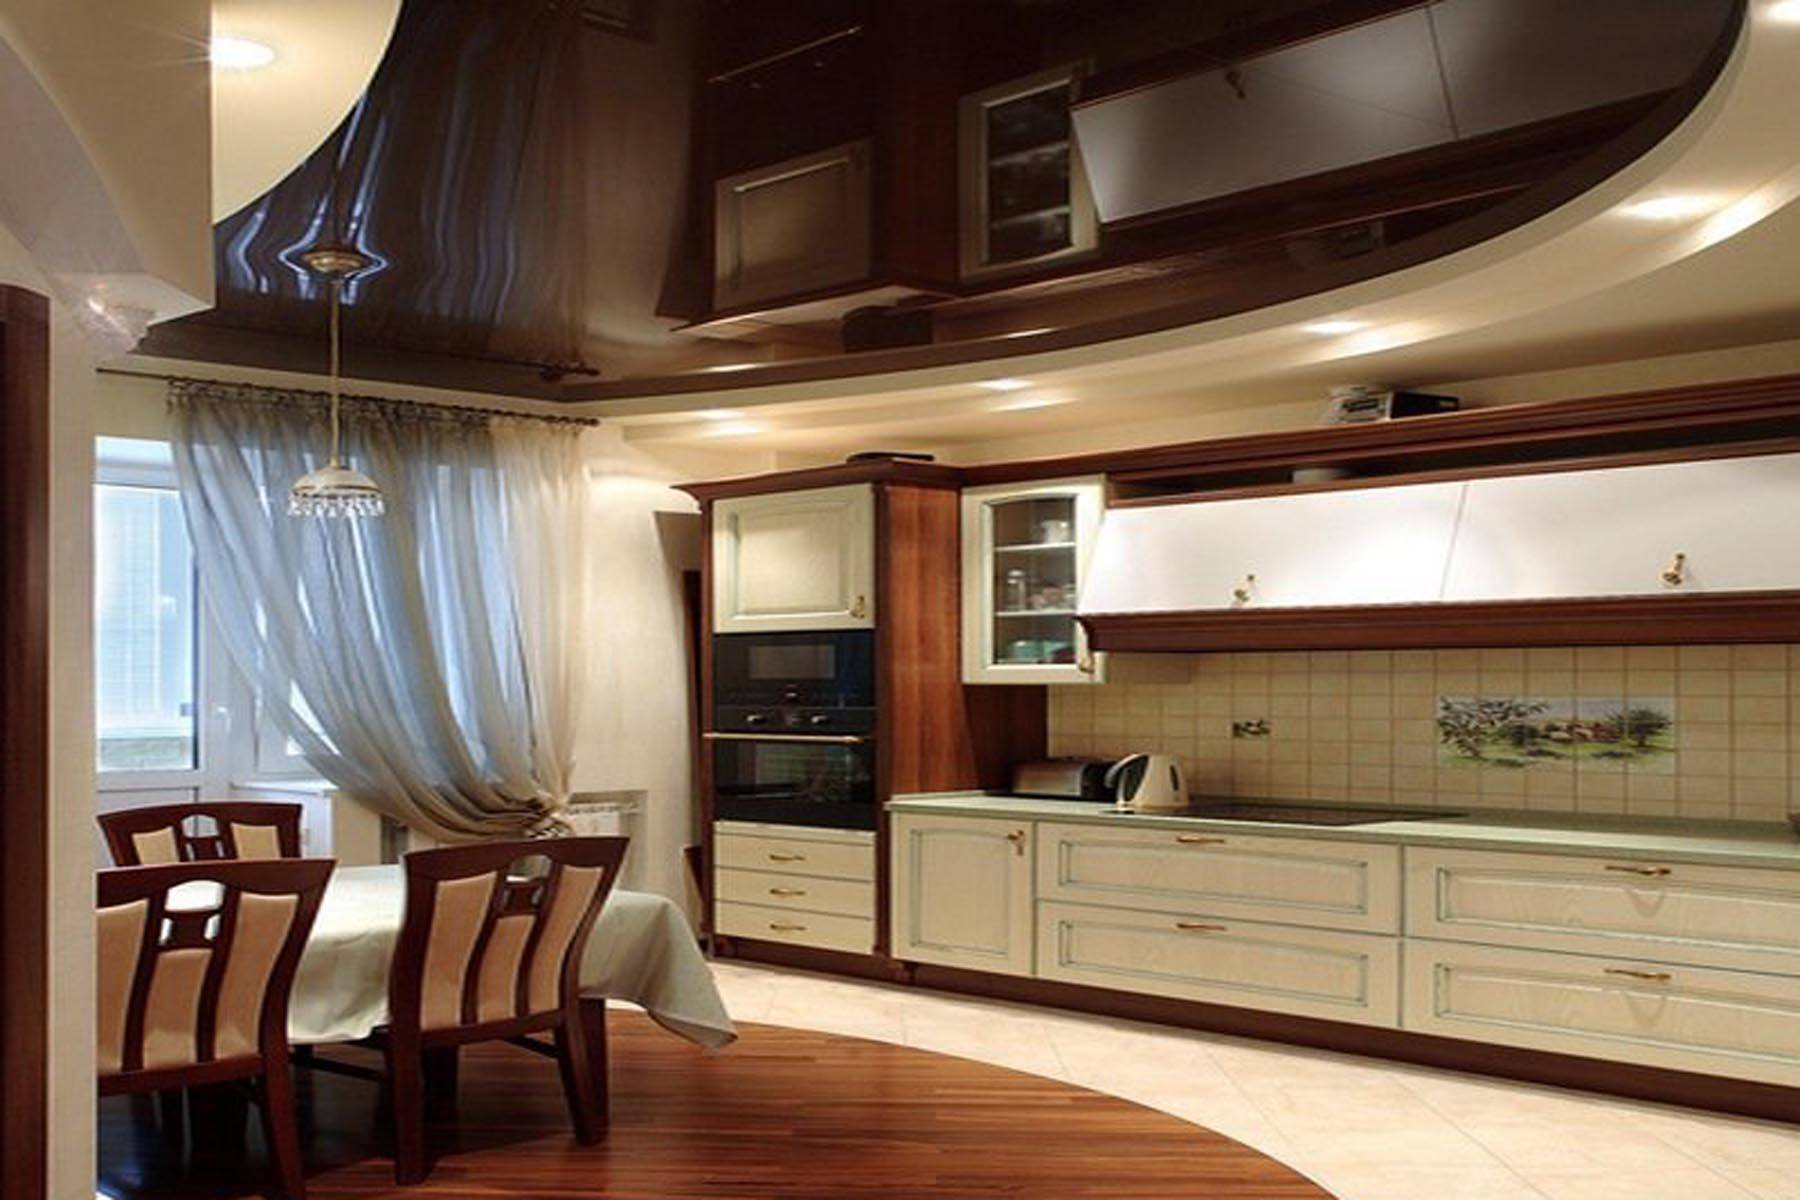 Натяжной потолок на кухне - фото двухуровневого глянцевого, матового натяжного потолока и освещения на кухне.